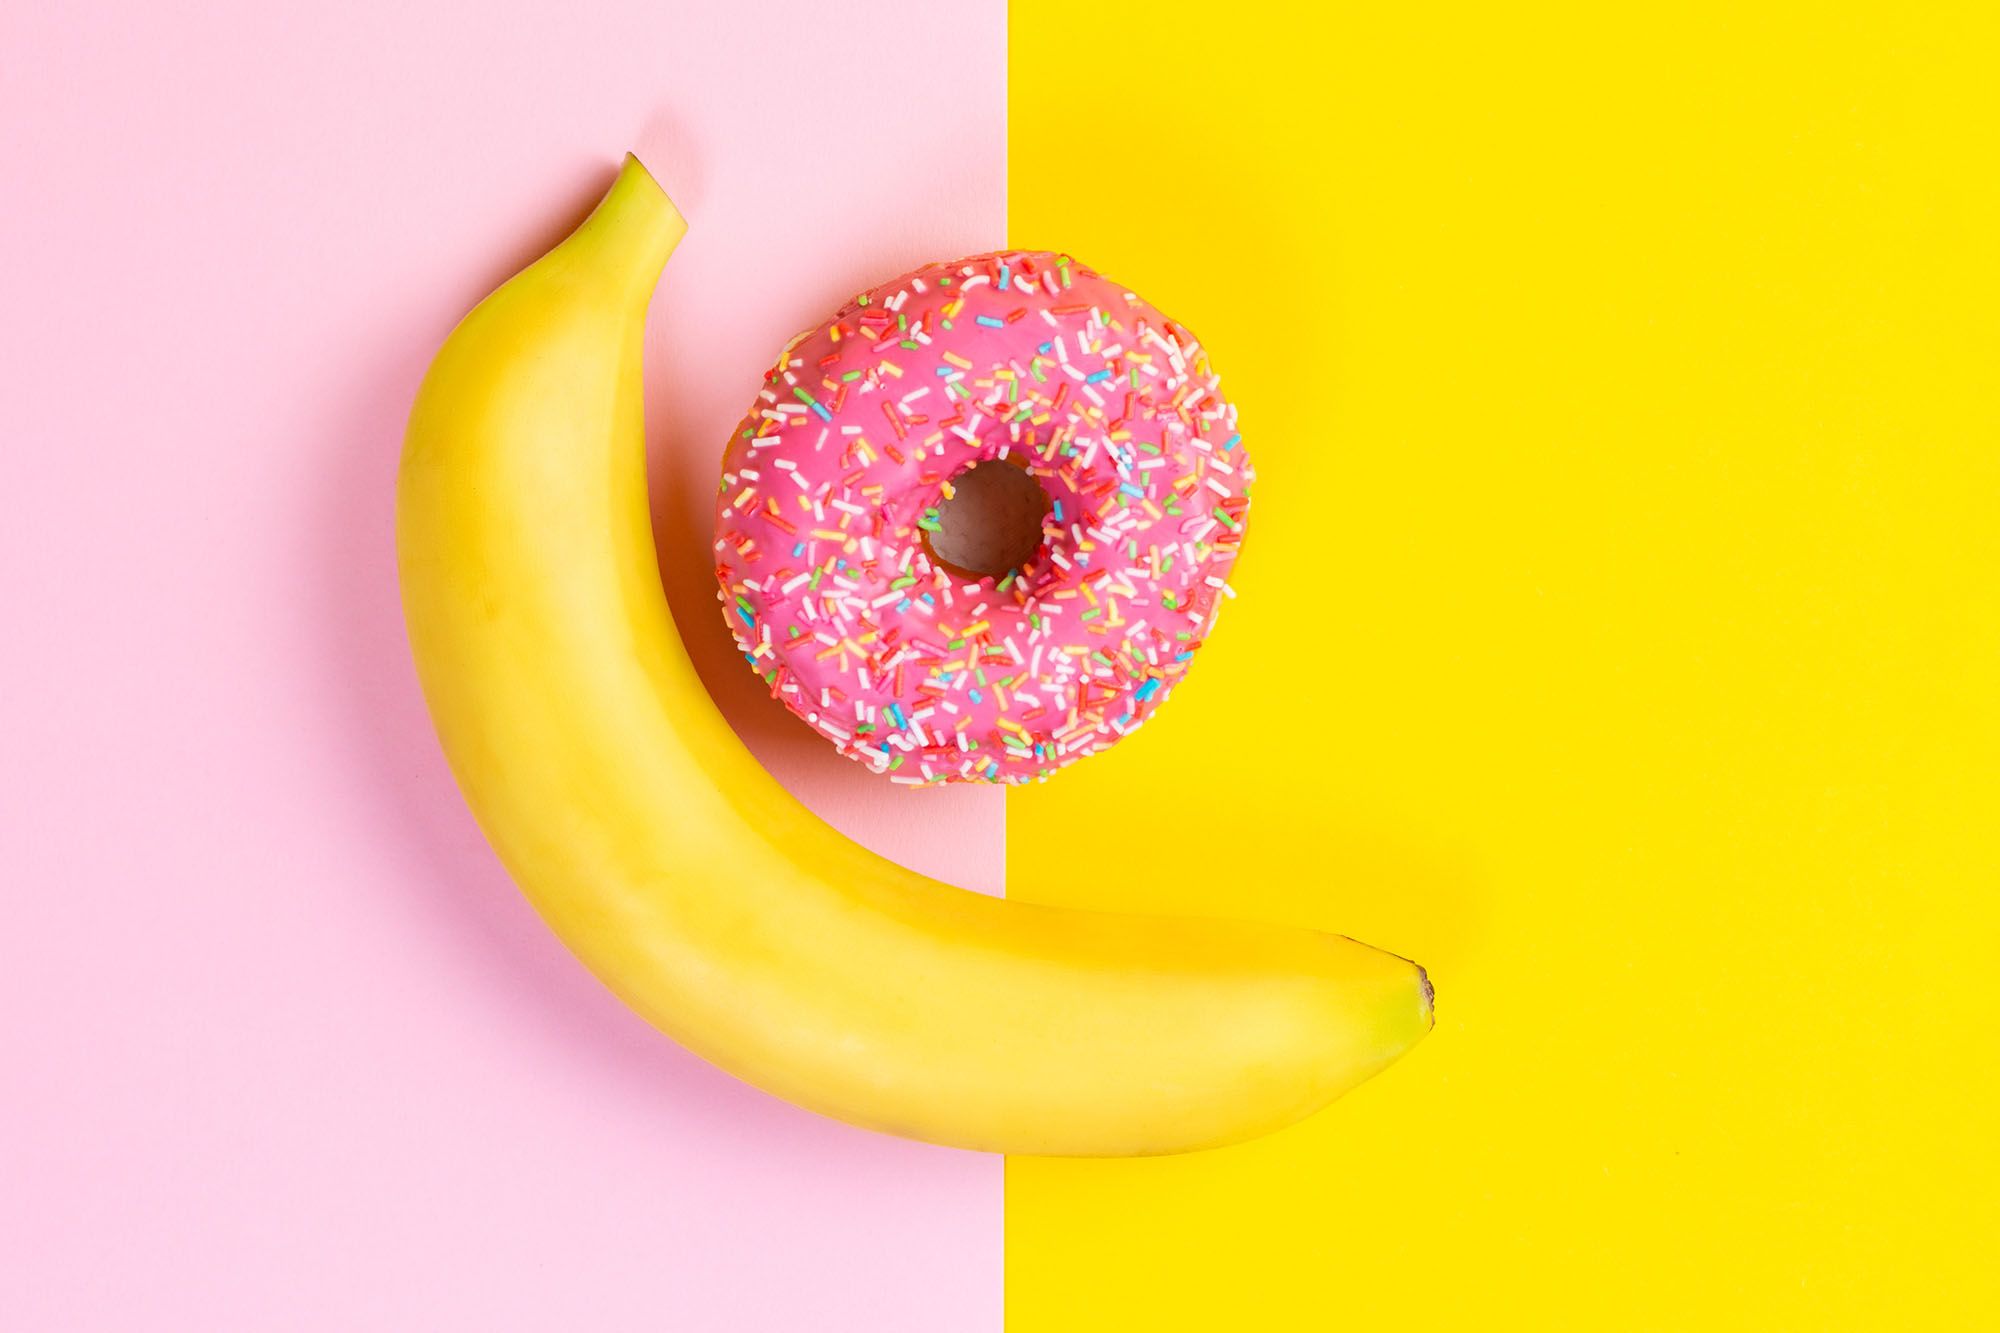 Banane und Donut auf gelb-rosa Hintergrund